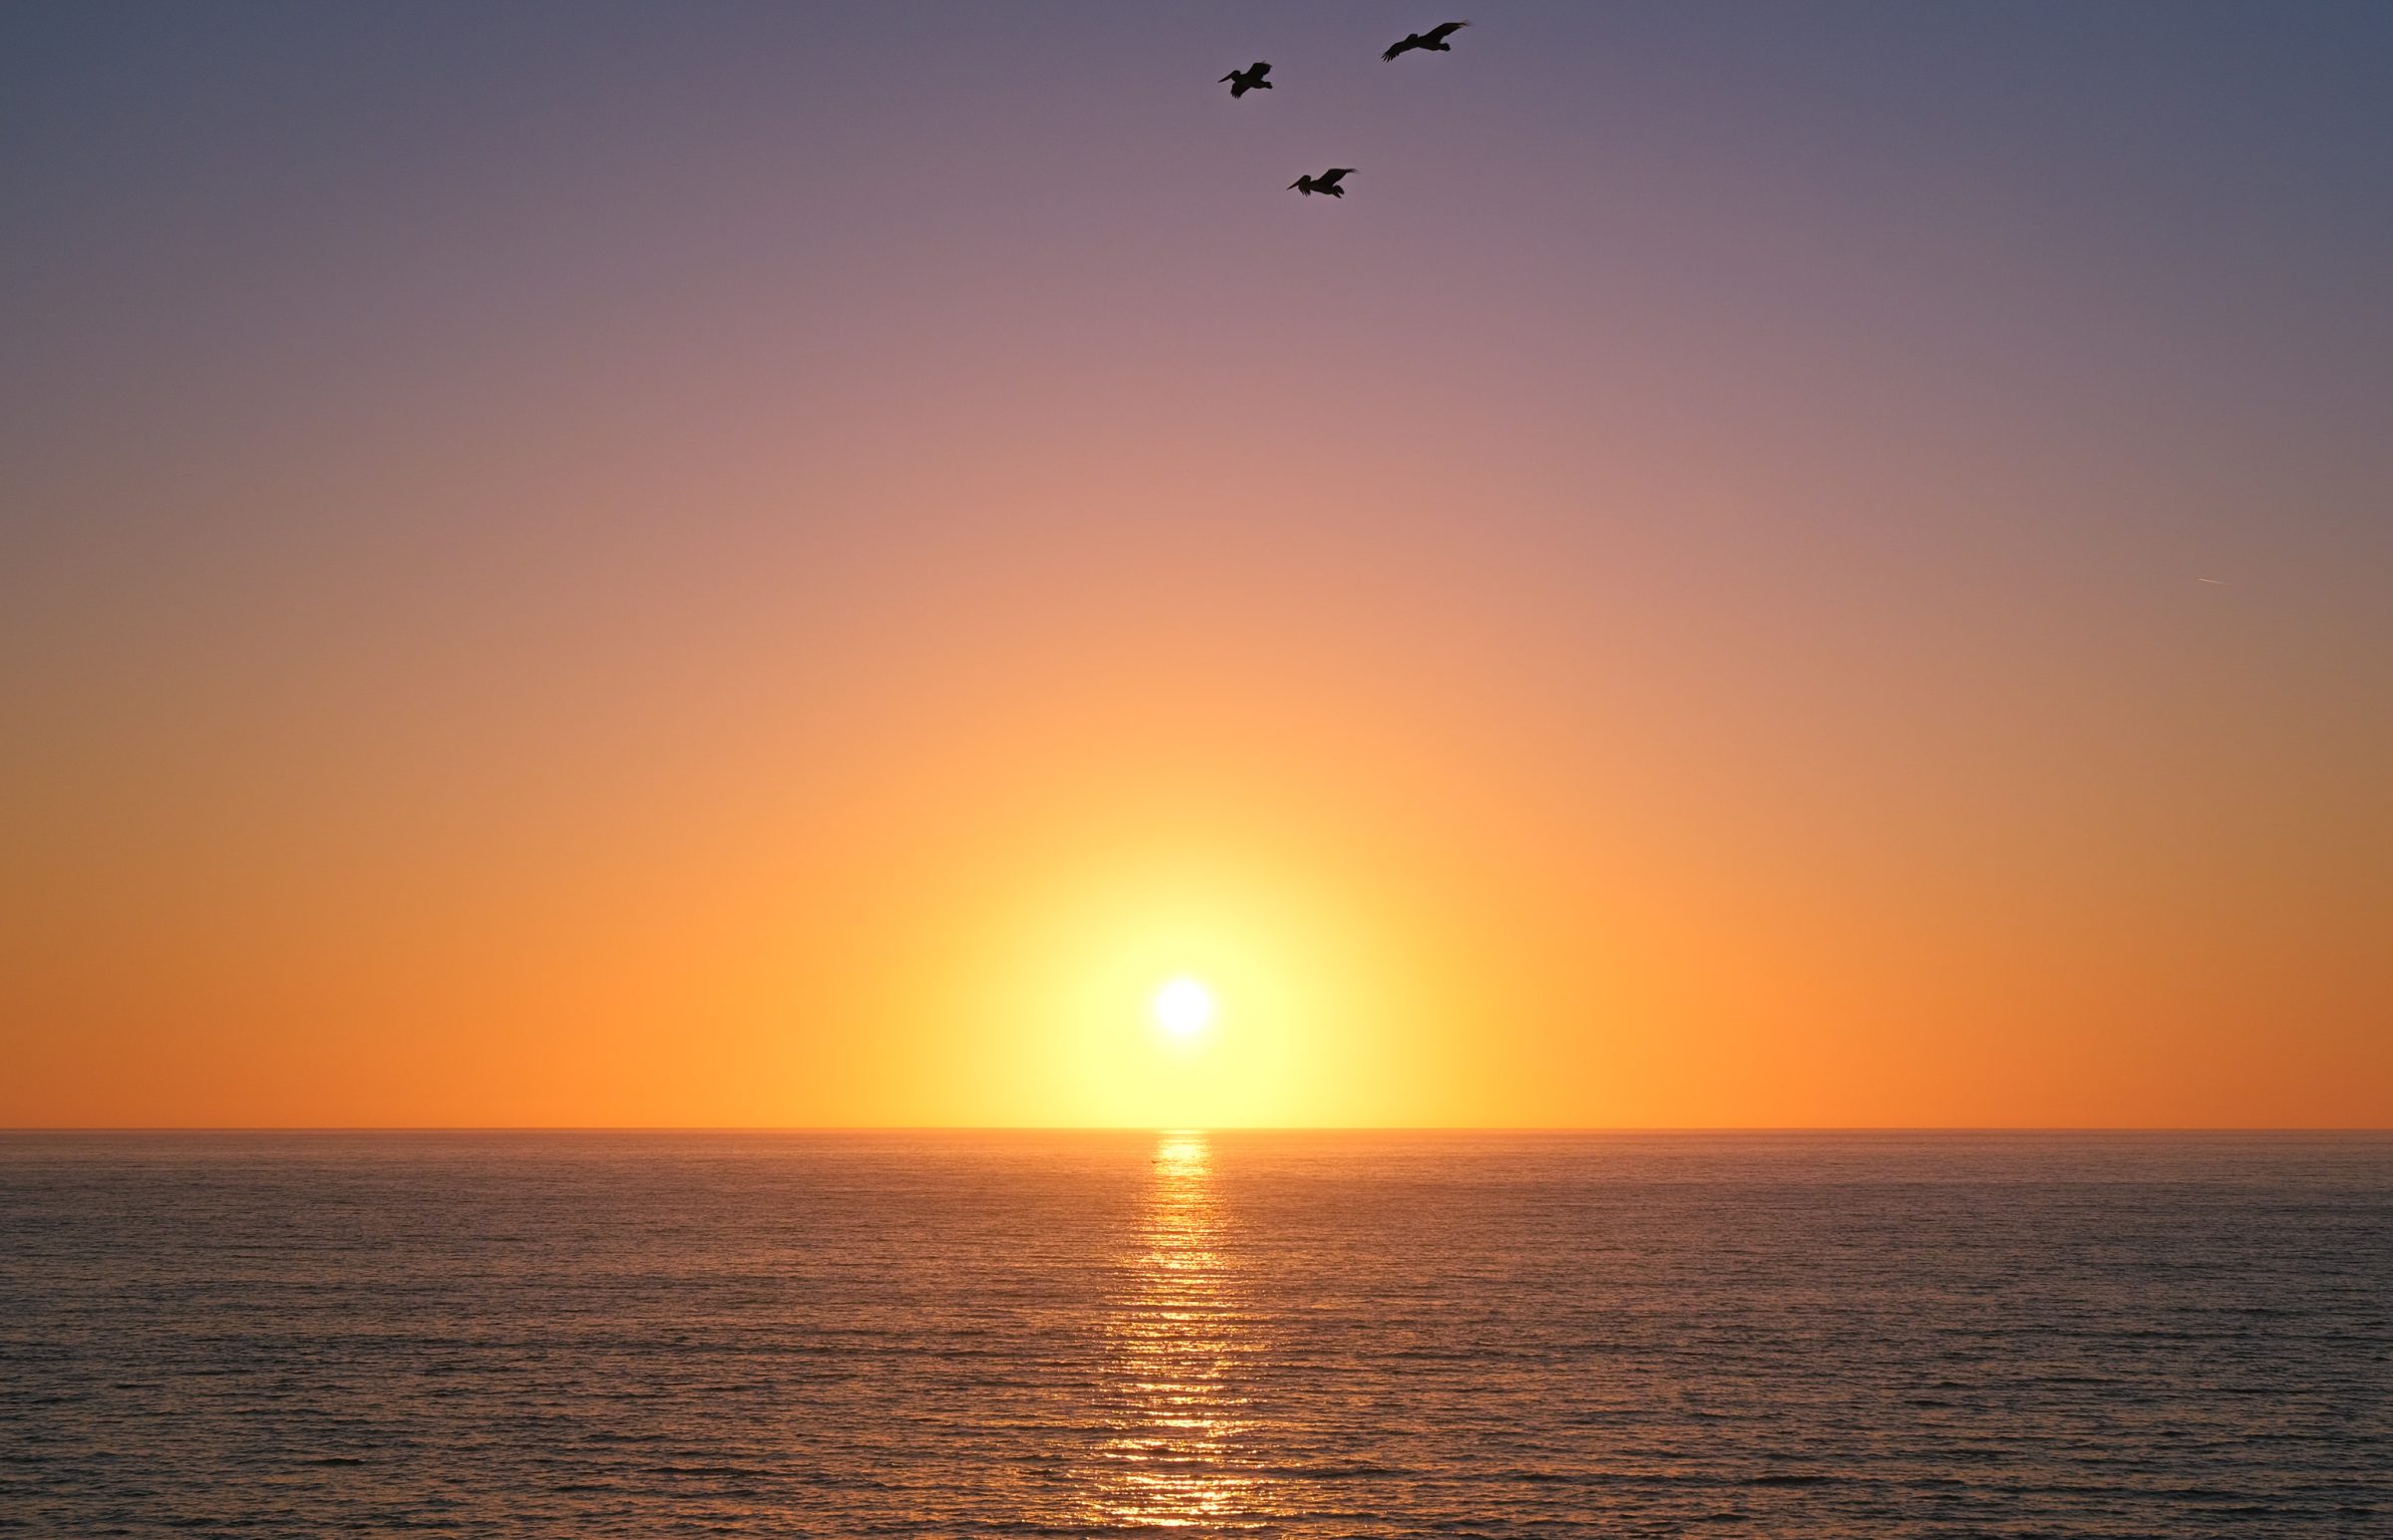 Spokojne morze, zachodzące słońce i latające nad głową pelikany. Najwyższy spokój.